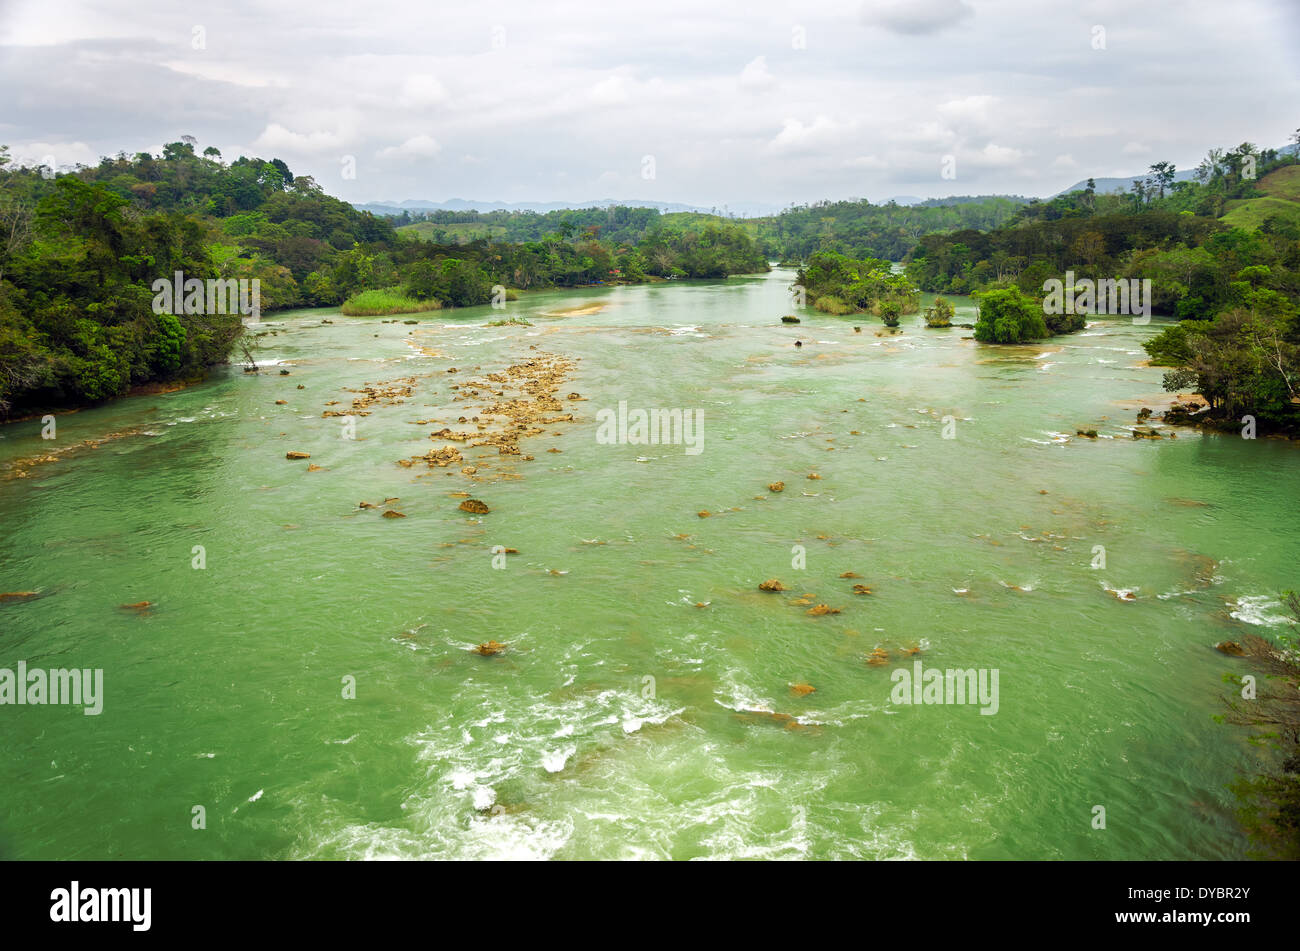 Green largo fiume che scorre attraverso un incontaminato paesaggio naturale in Chiapas, Messico Foto Stock